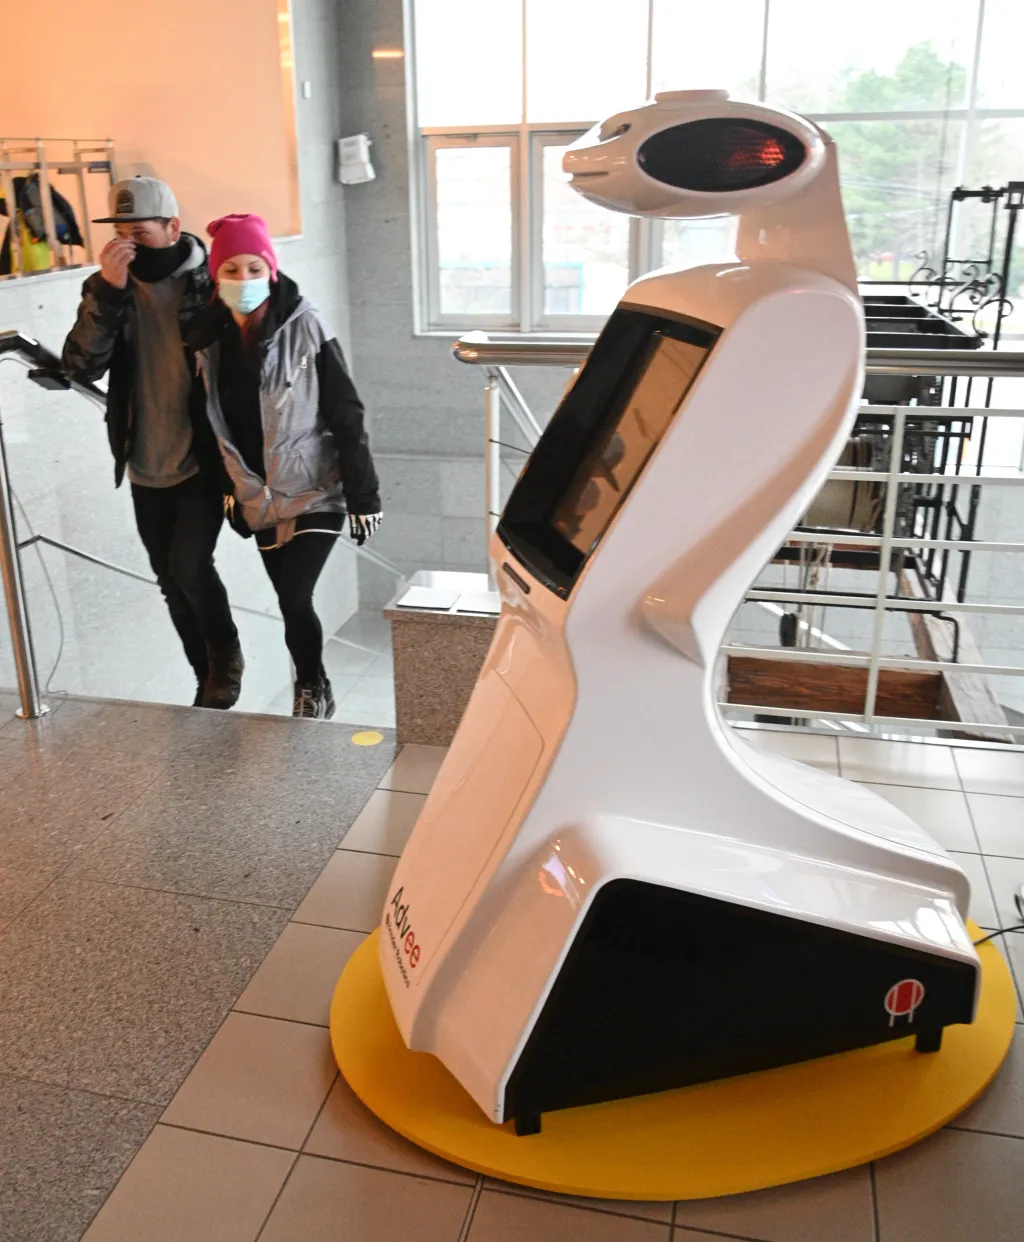 Technické muzeum Brno připravilo pro návštěvníky výstavní projekt ROBOT 2020